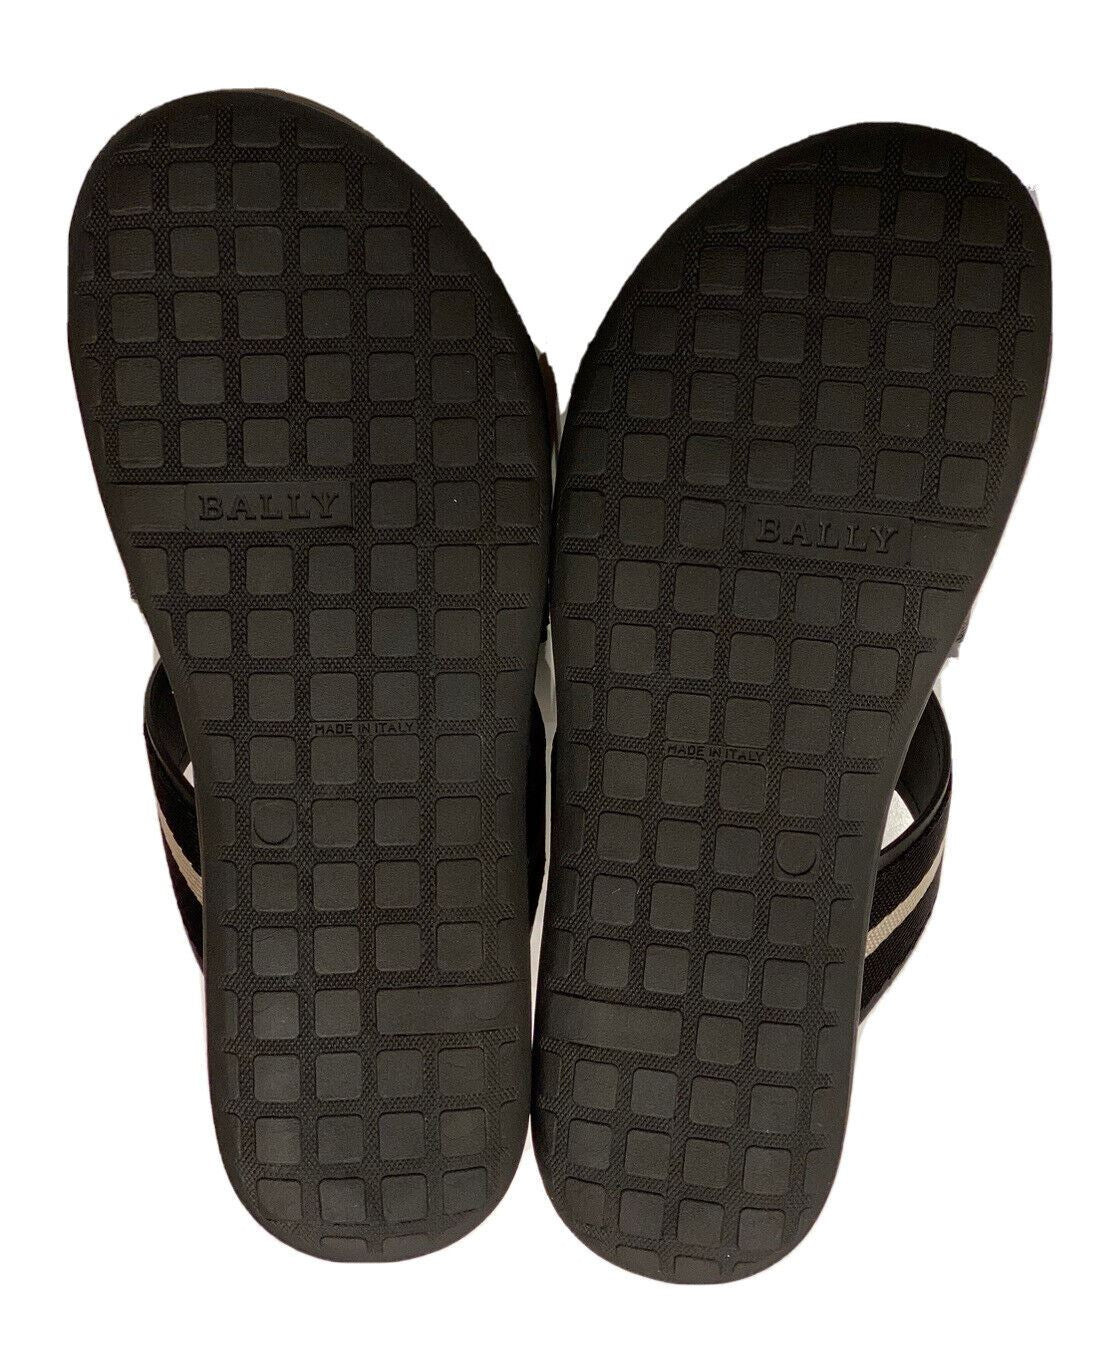 Мужские черные сандалии Bally Sasha Slide из текстиля и кожи стоимостью 450 долларов США 9, США 6234150 